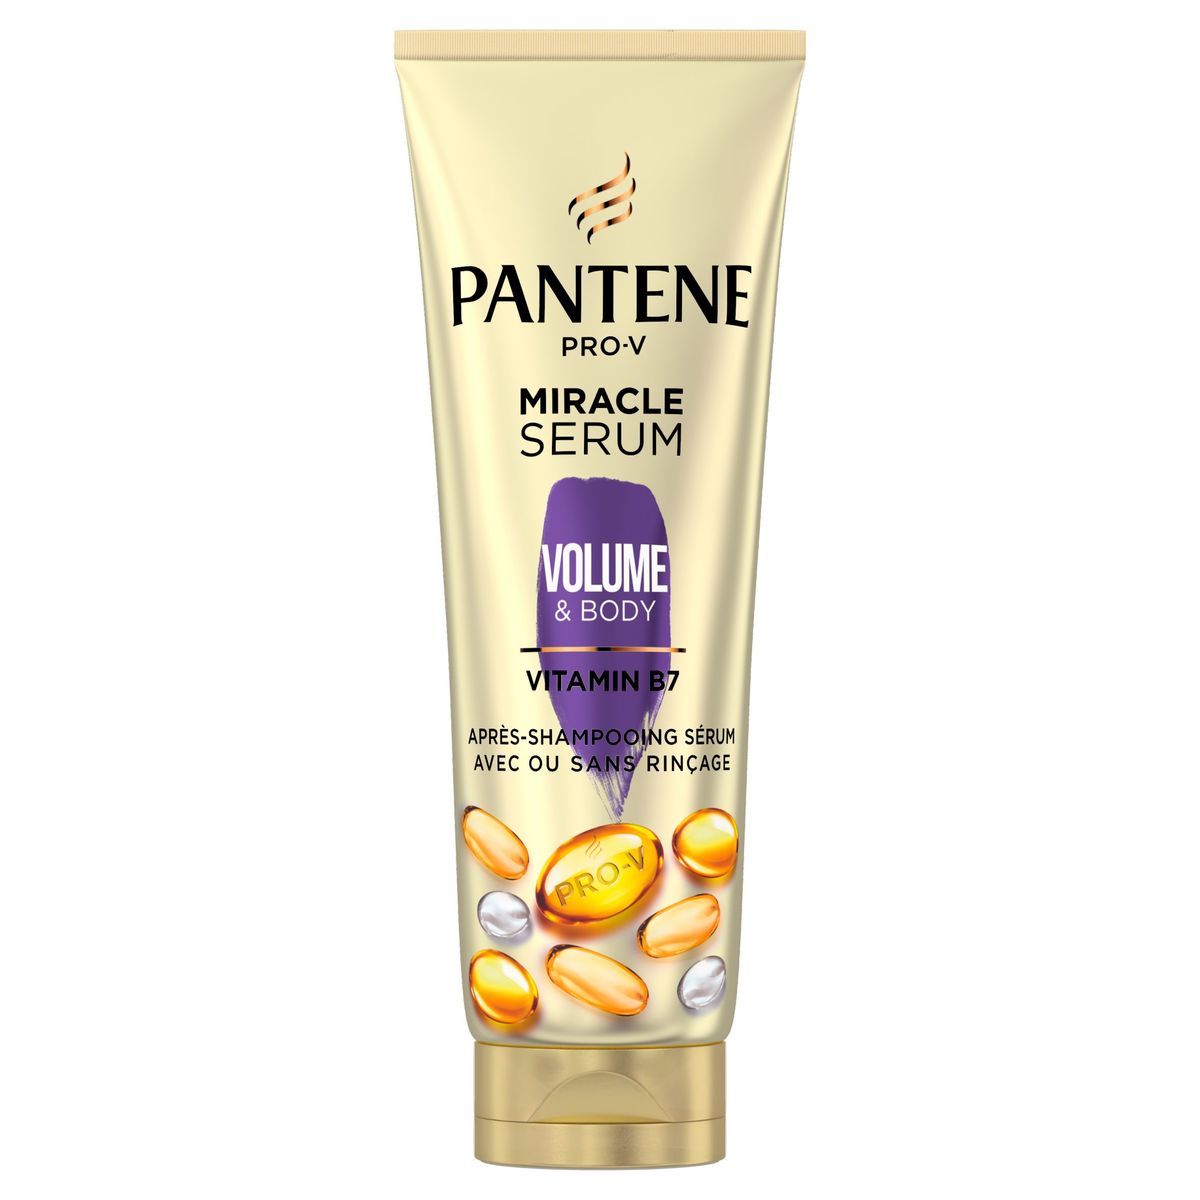 Pantene Volume & Body Miracle Serum